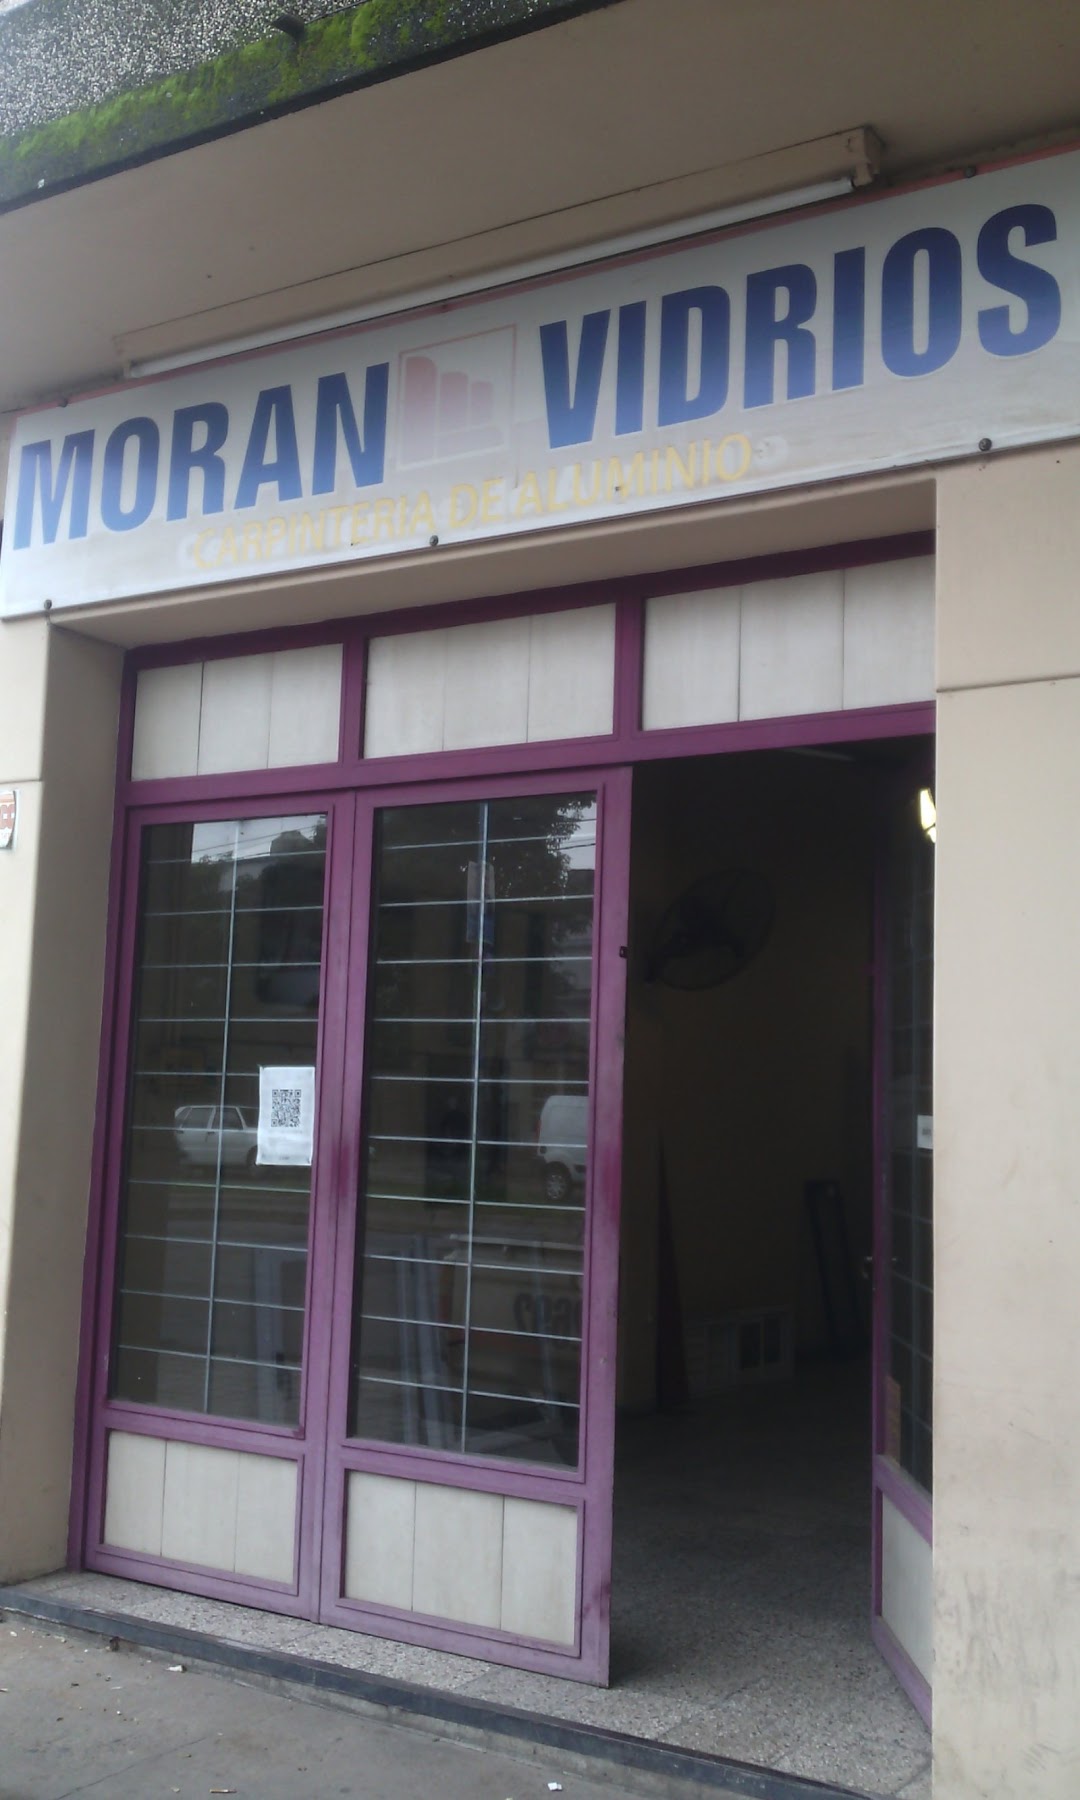 Moran Vidrios